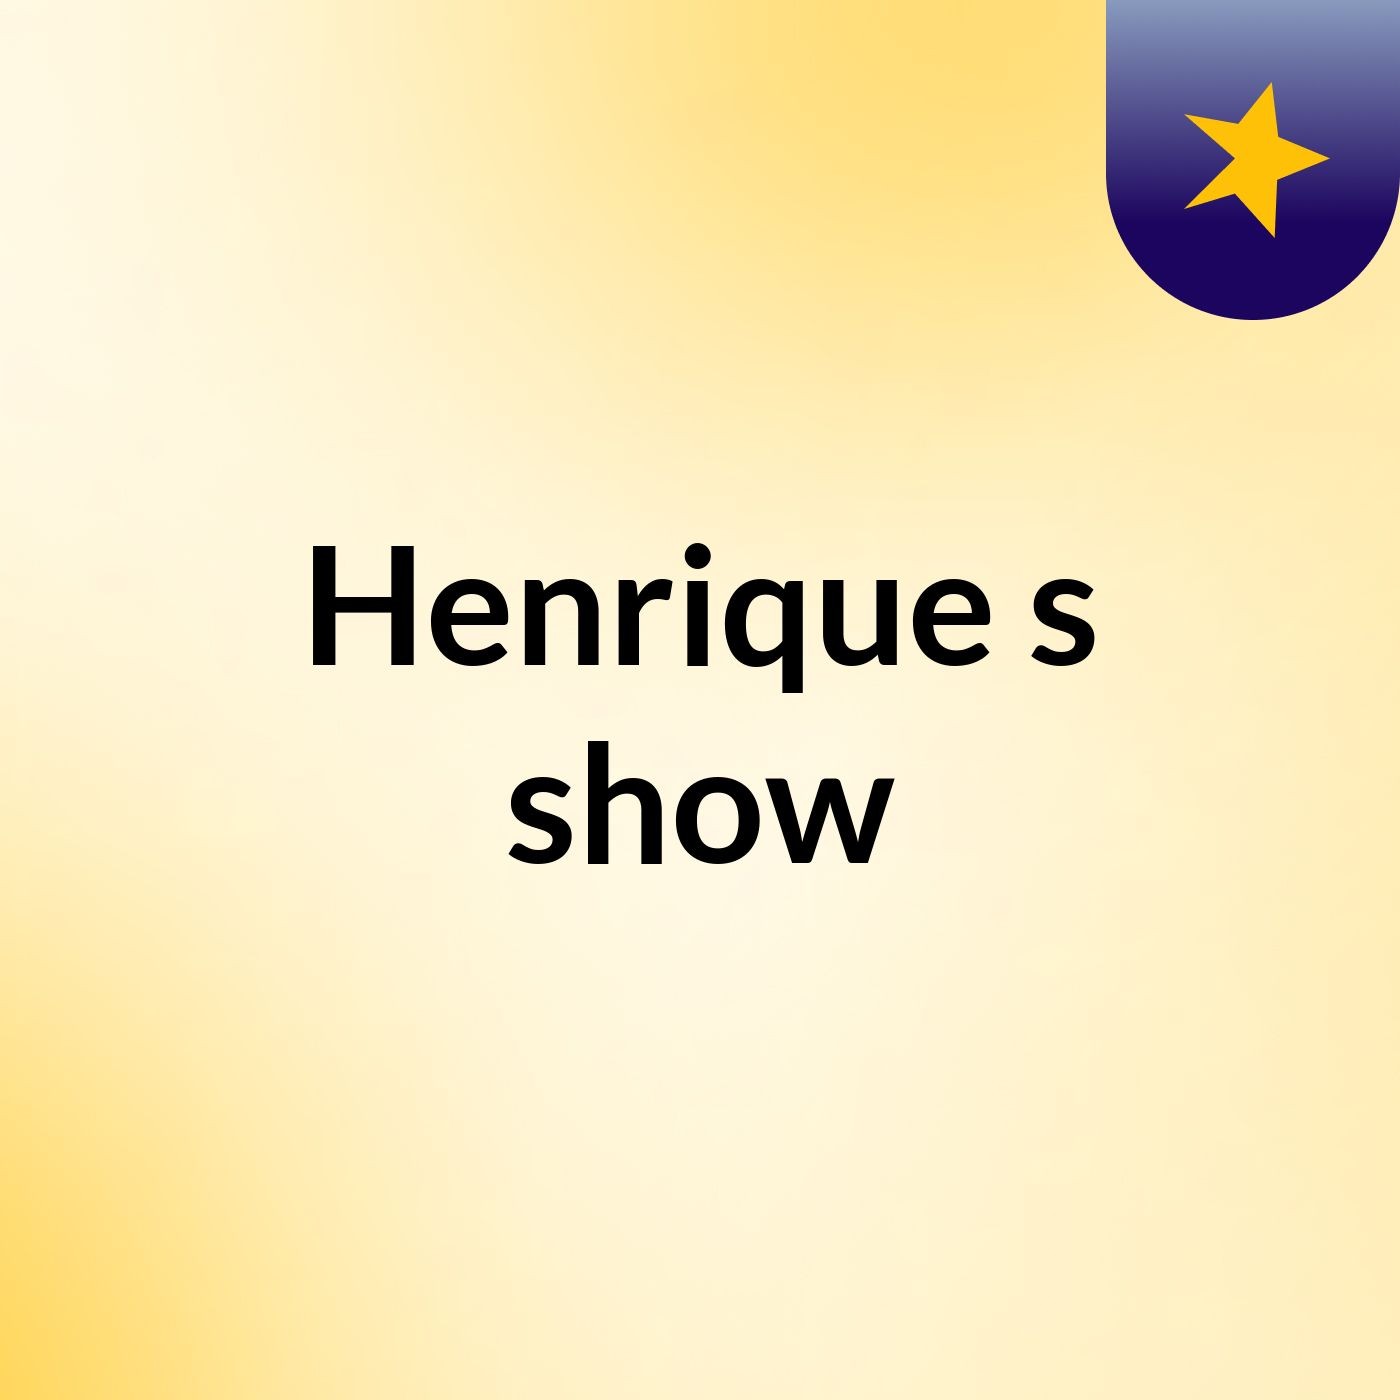 Henrique's show